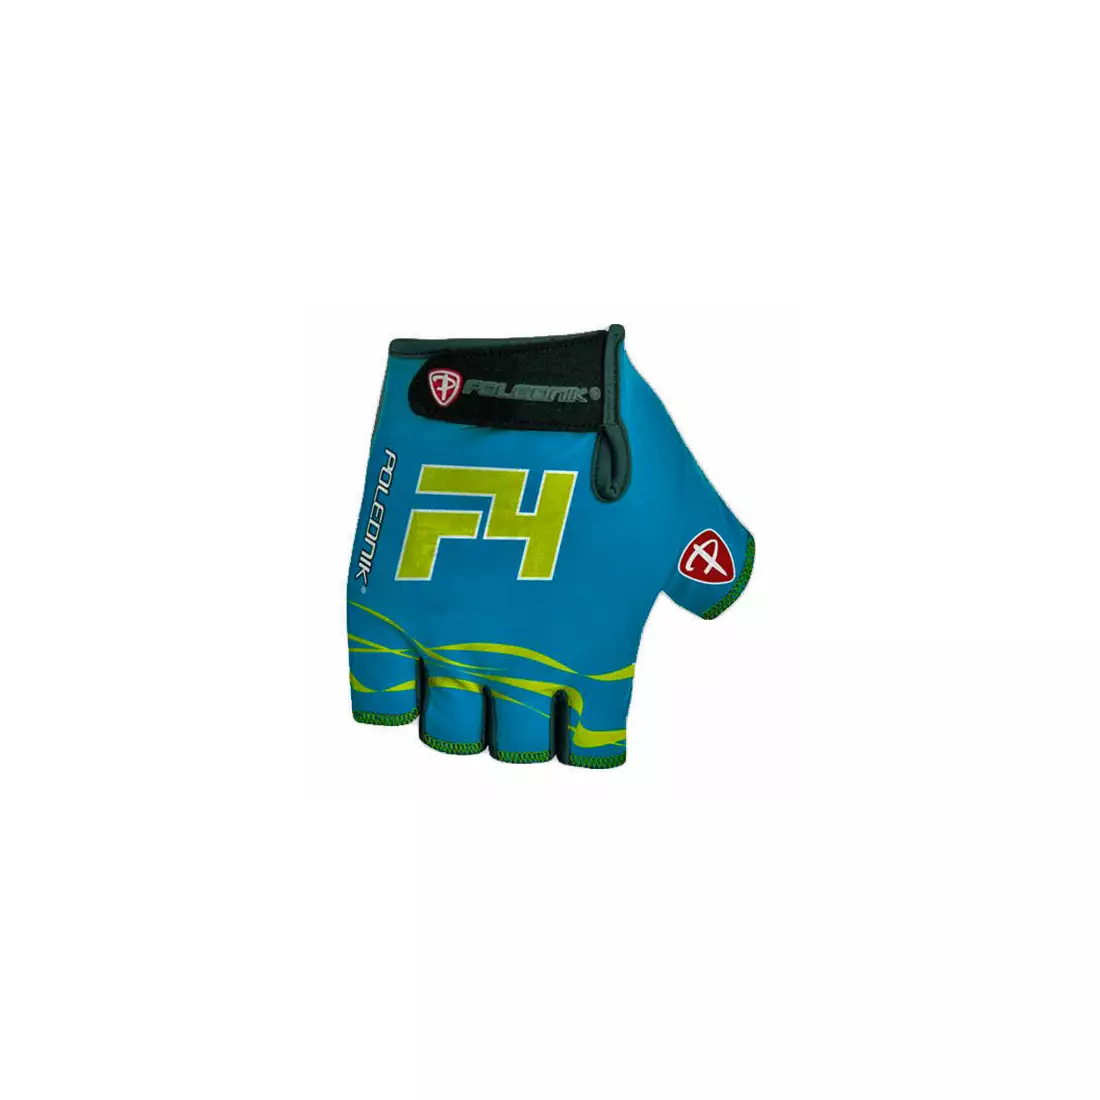 Mănuși POLEDNIK F4 NEW15, culoare: albastru